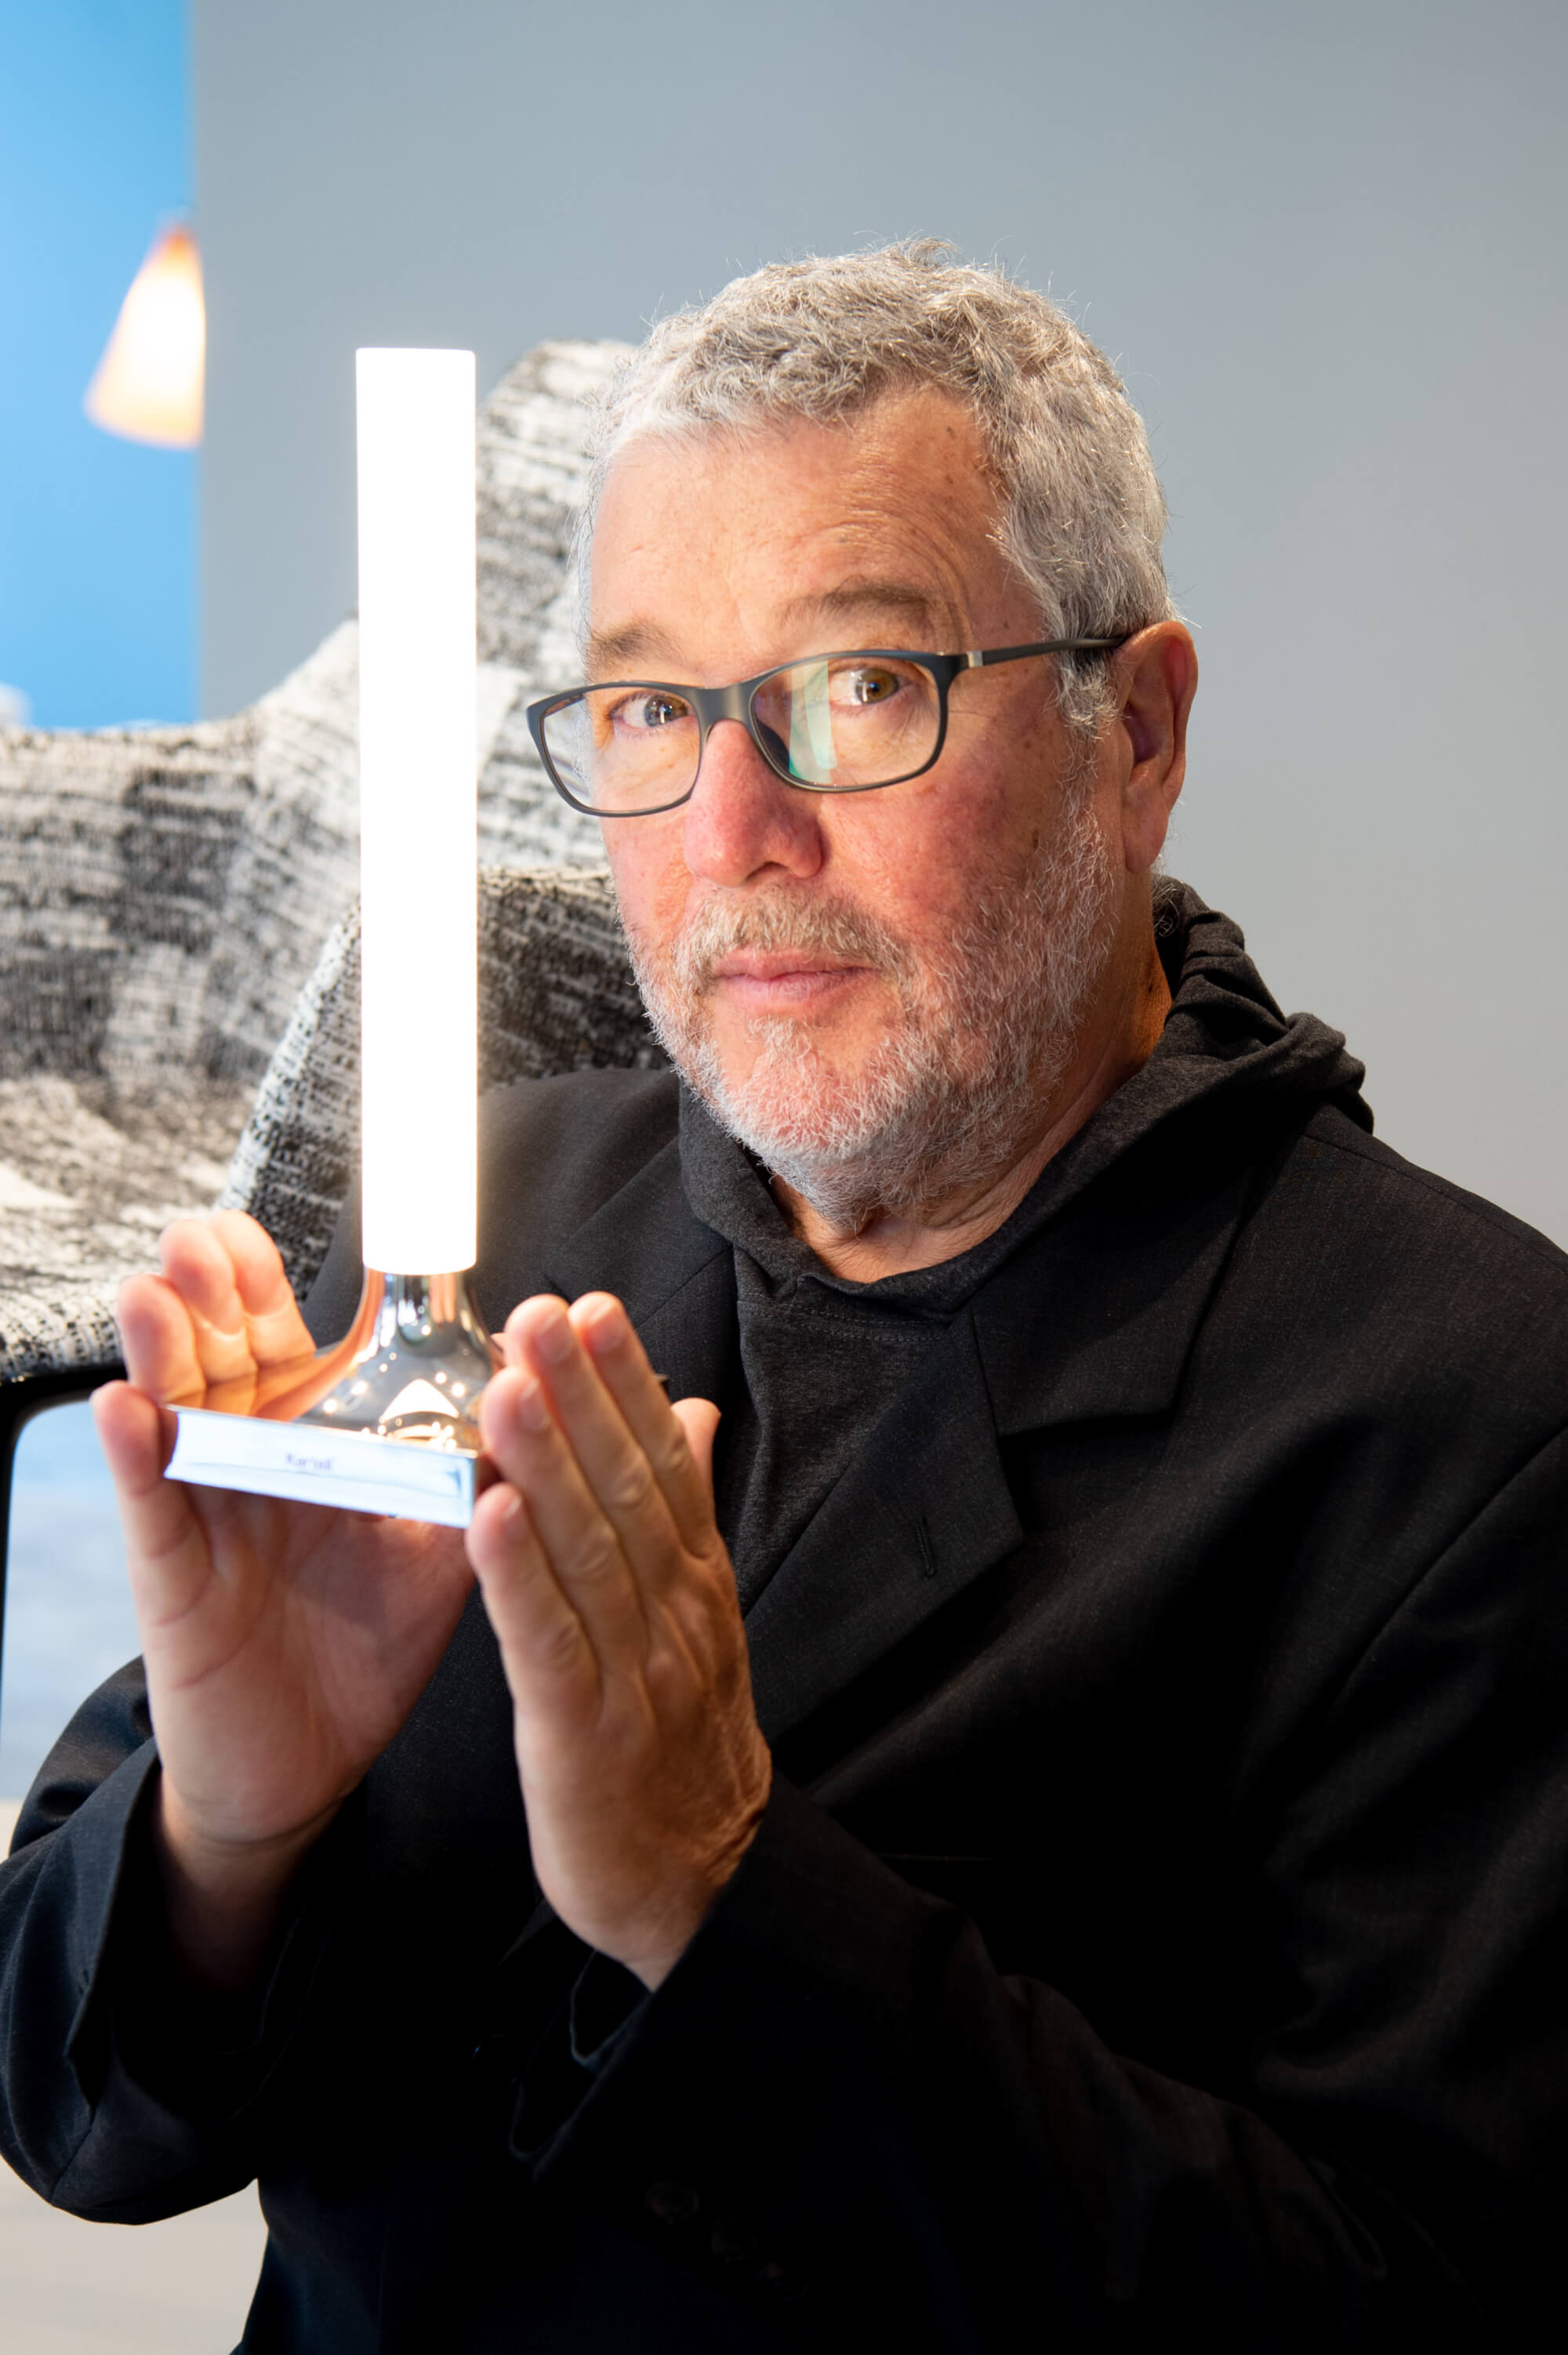 Philippe Starck wins a 2022 Wallpaper Design Award